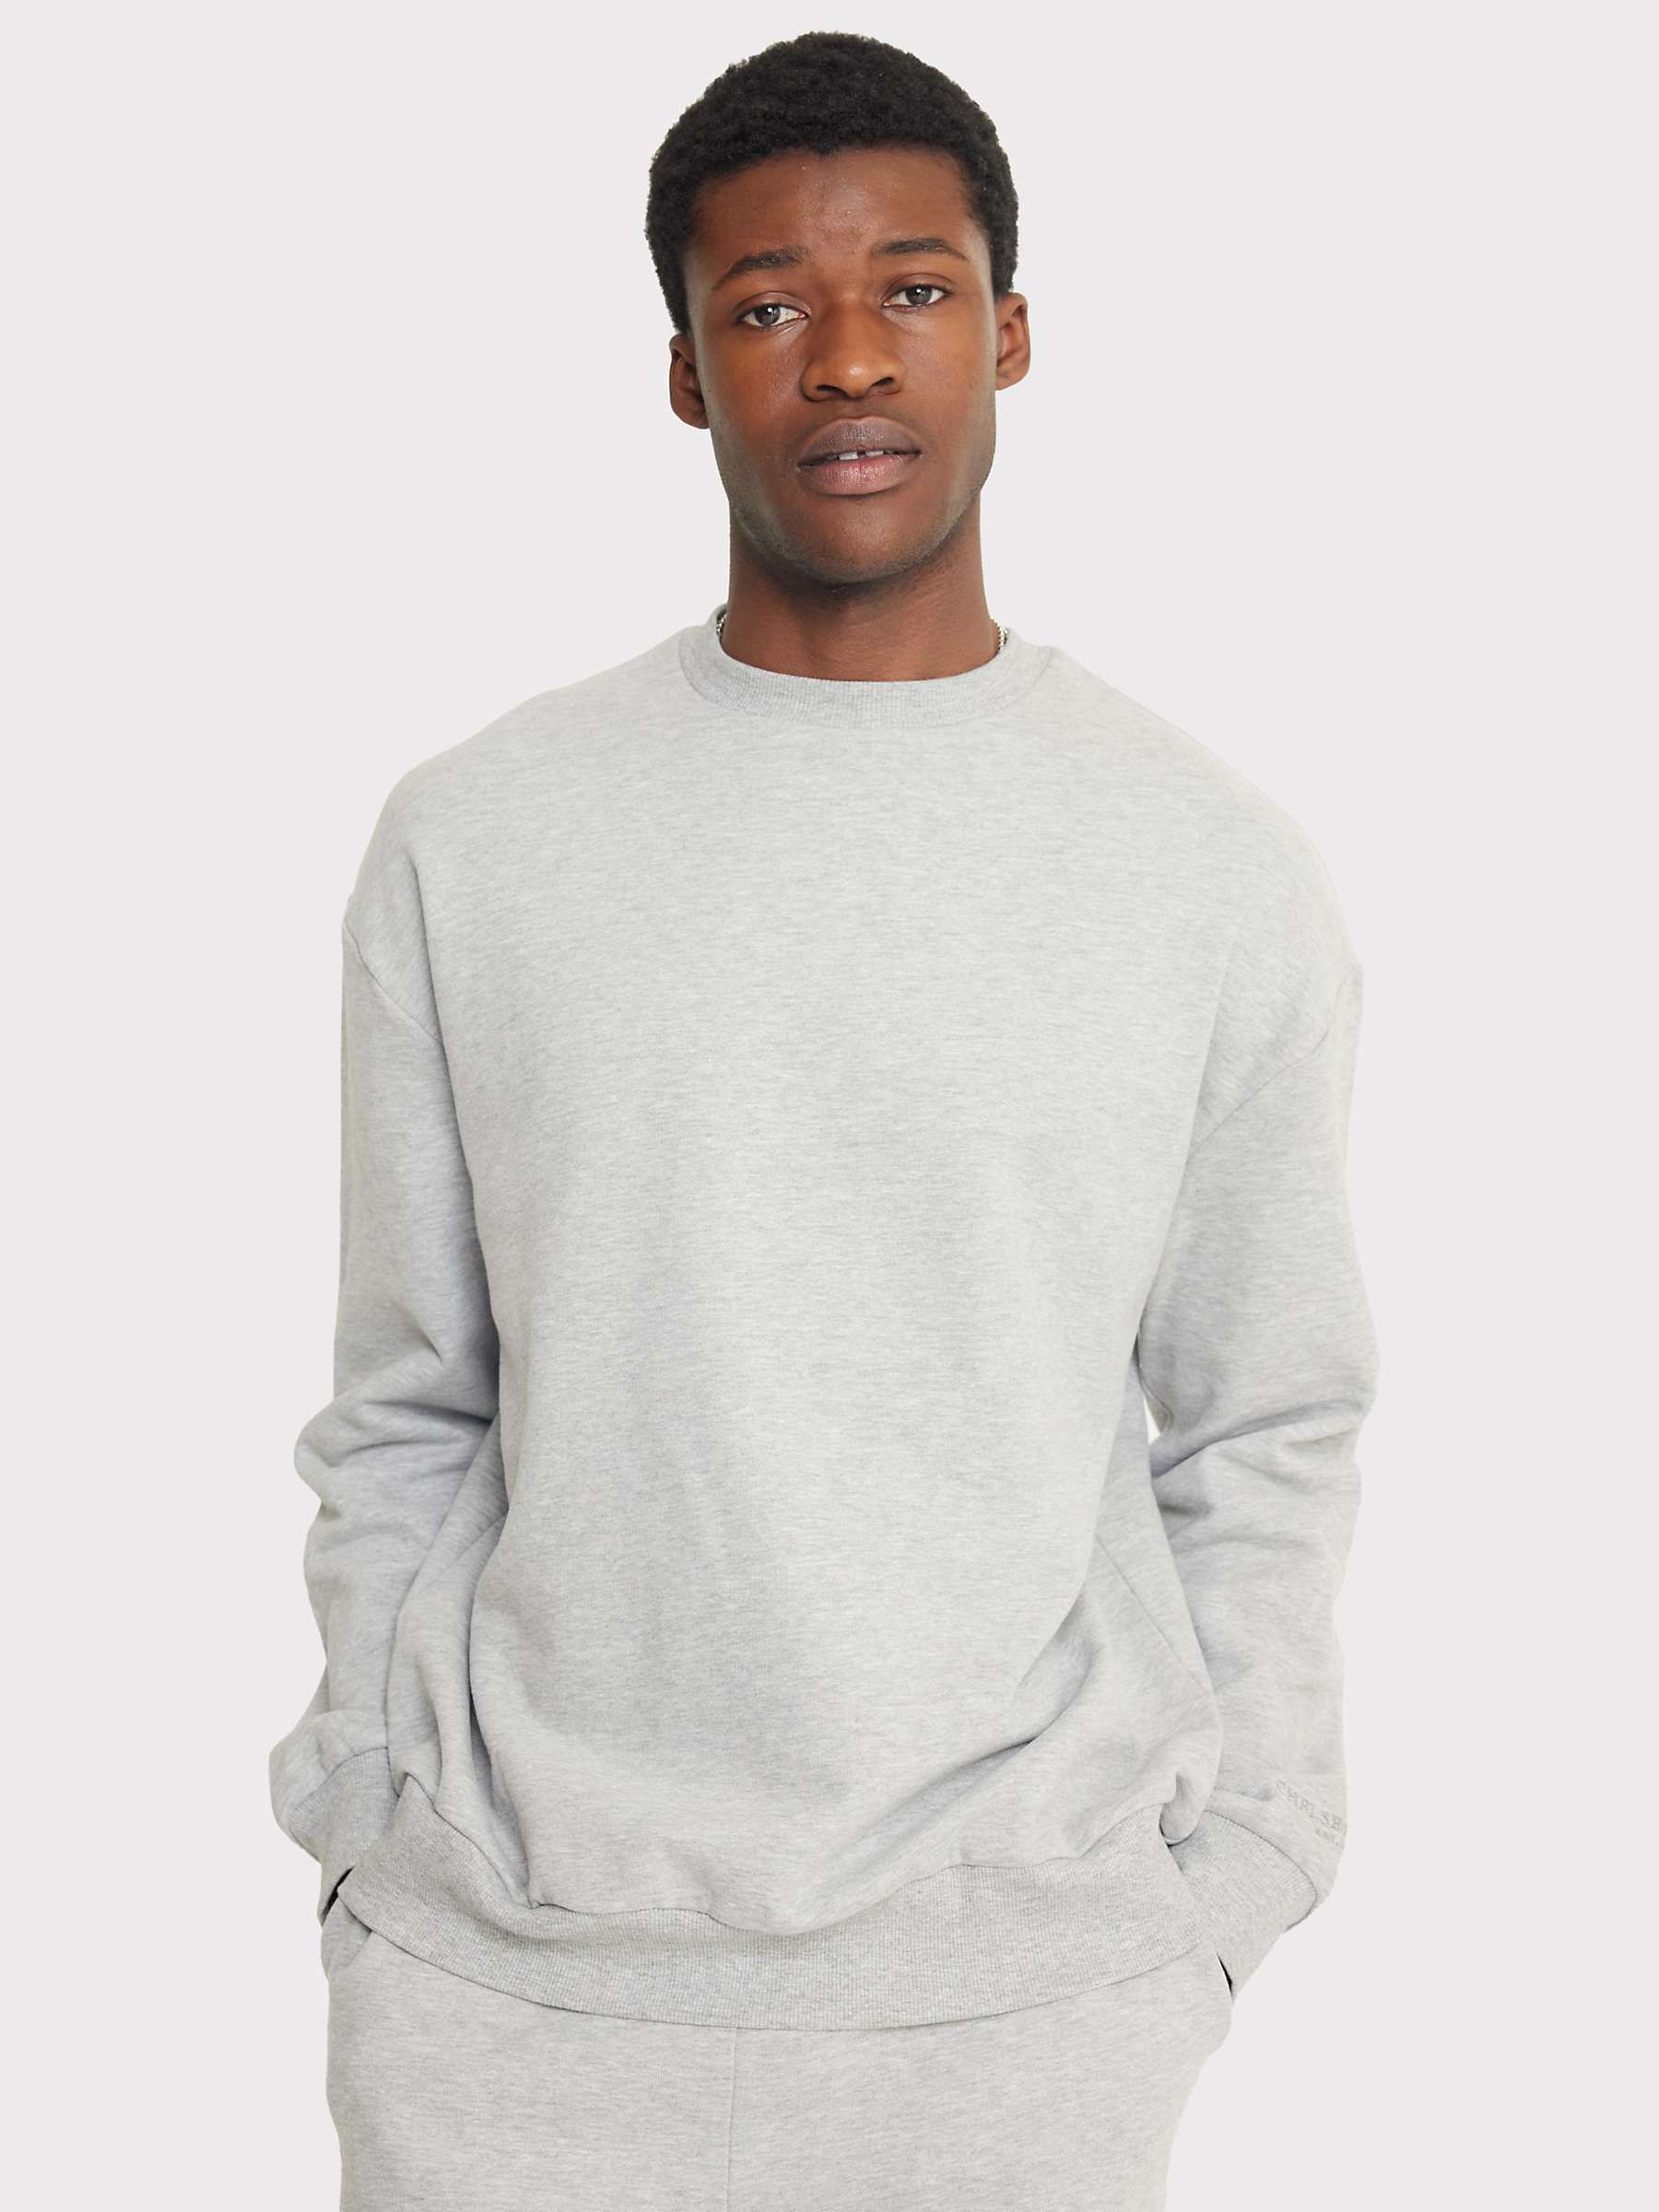 Buy Chelsea Peers Organic Cotton Blend Sweatshirt, Grey Online at johnlewis.com